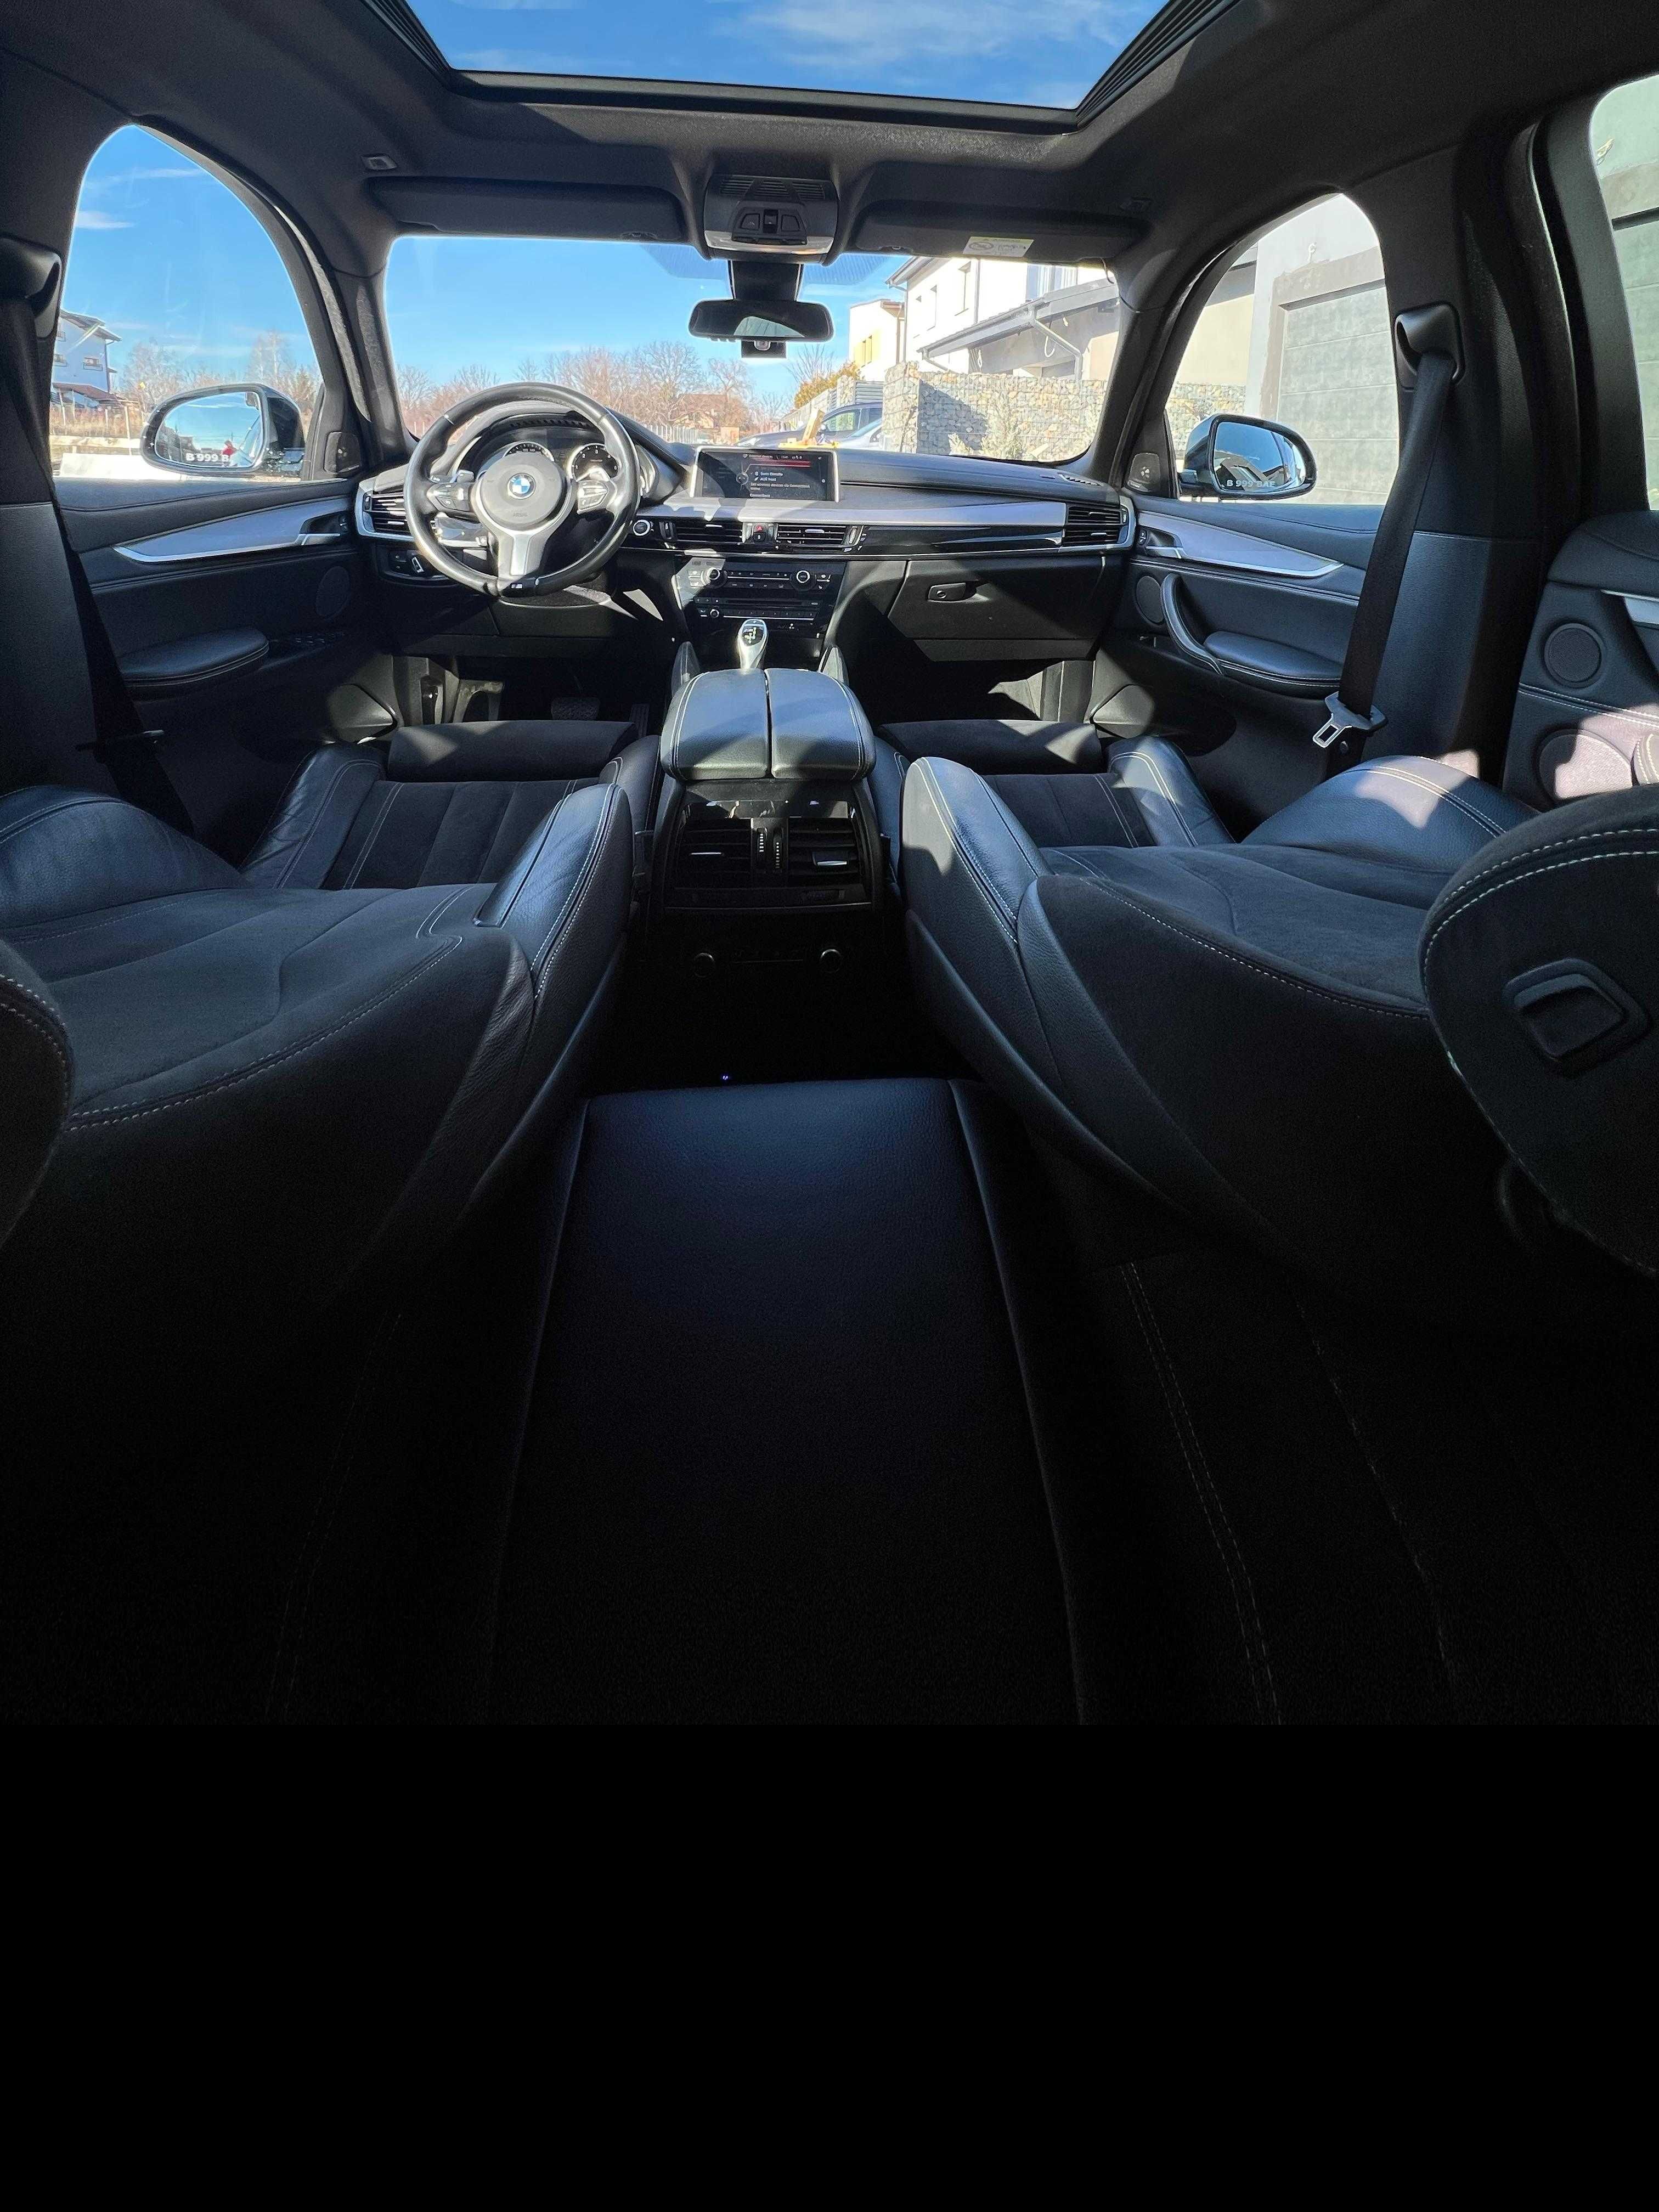 BMW X6 M50 D - impecabil tehnic si estetic - prim proprietar de noua